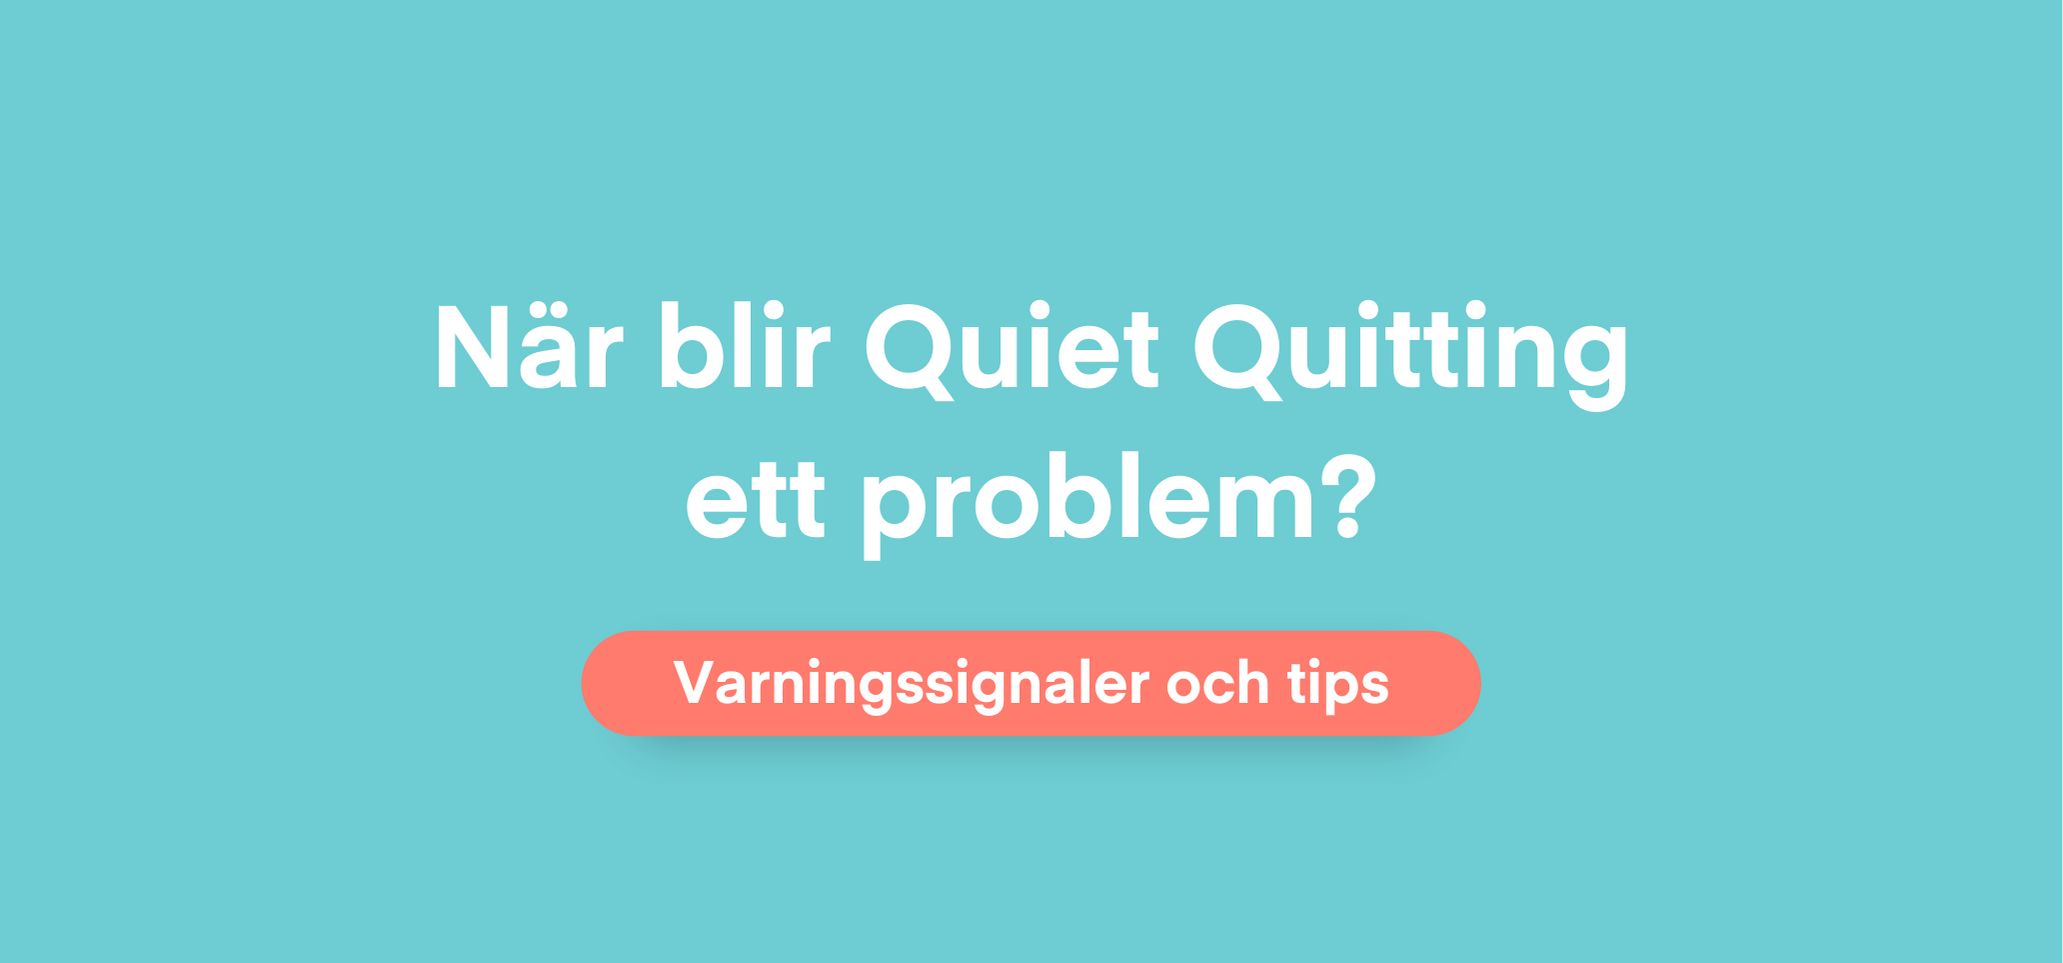 När blir Quiet Quitting ett problem?